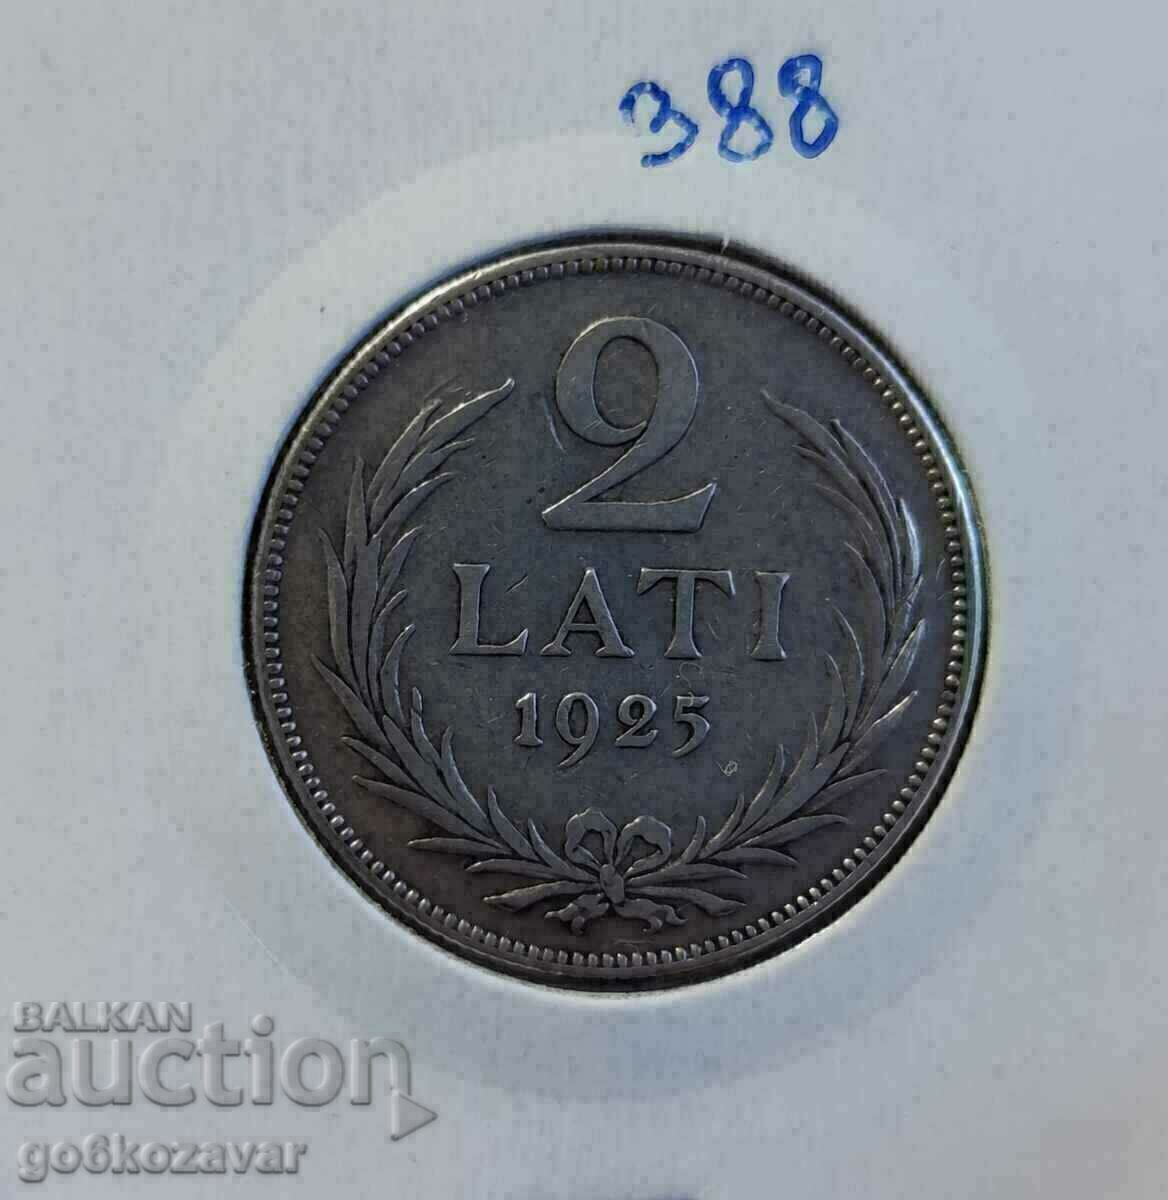 Λετονία 2 λατ 1925 Ασημί!